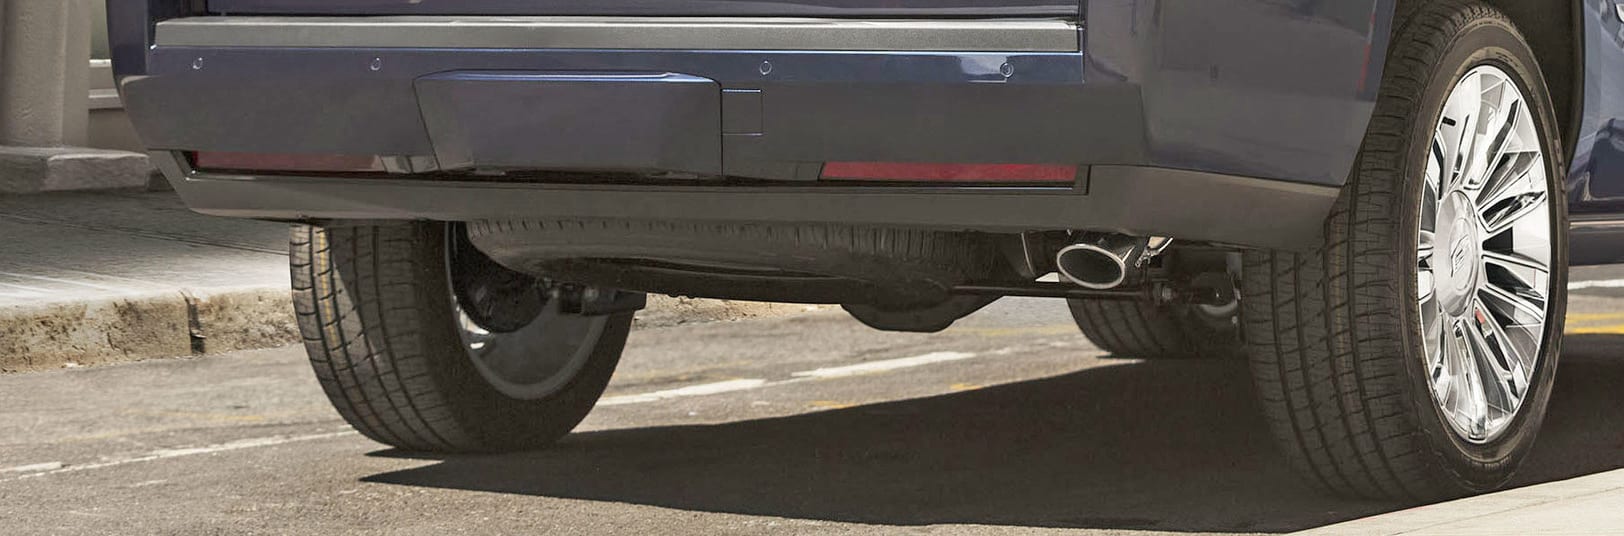 2018 Cadillac Escalade Rear Suspension